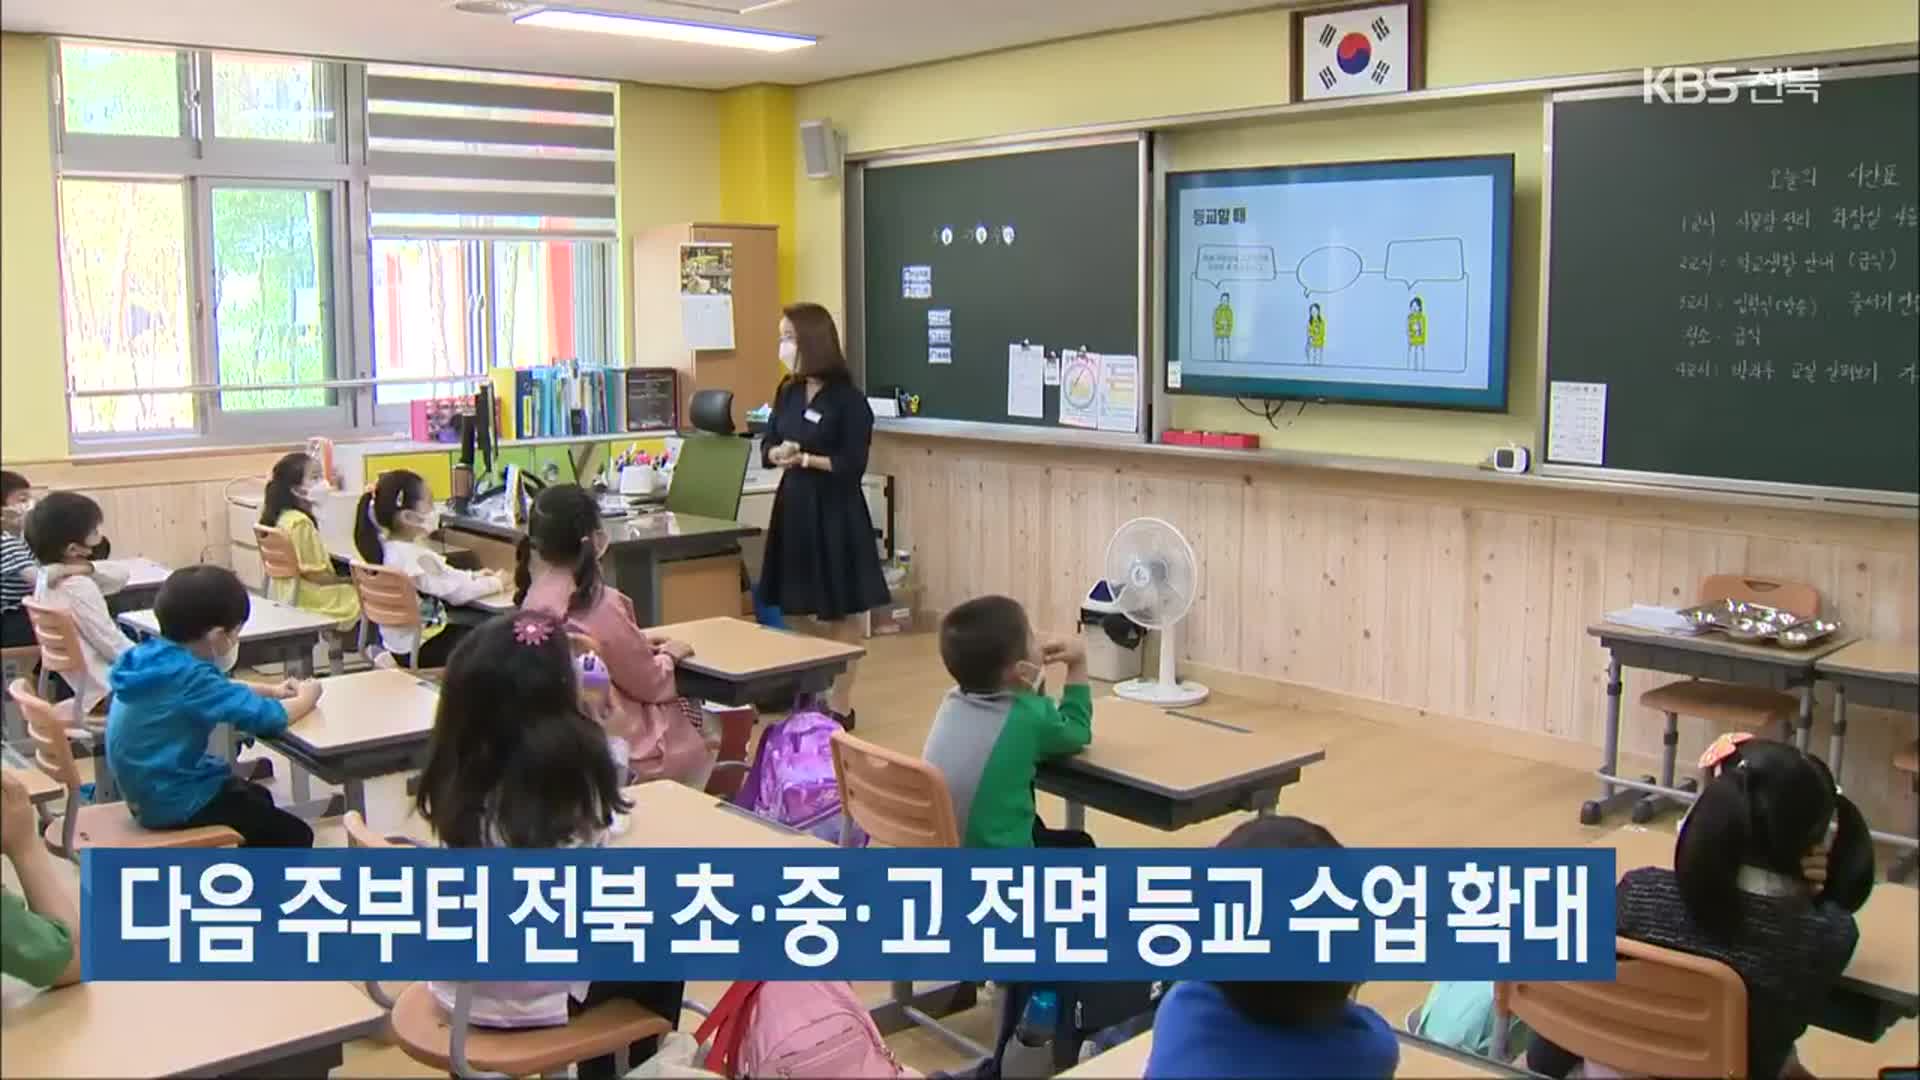 다음 주부터 전북 초·중·고 전면 등교 수업 확대